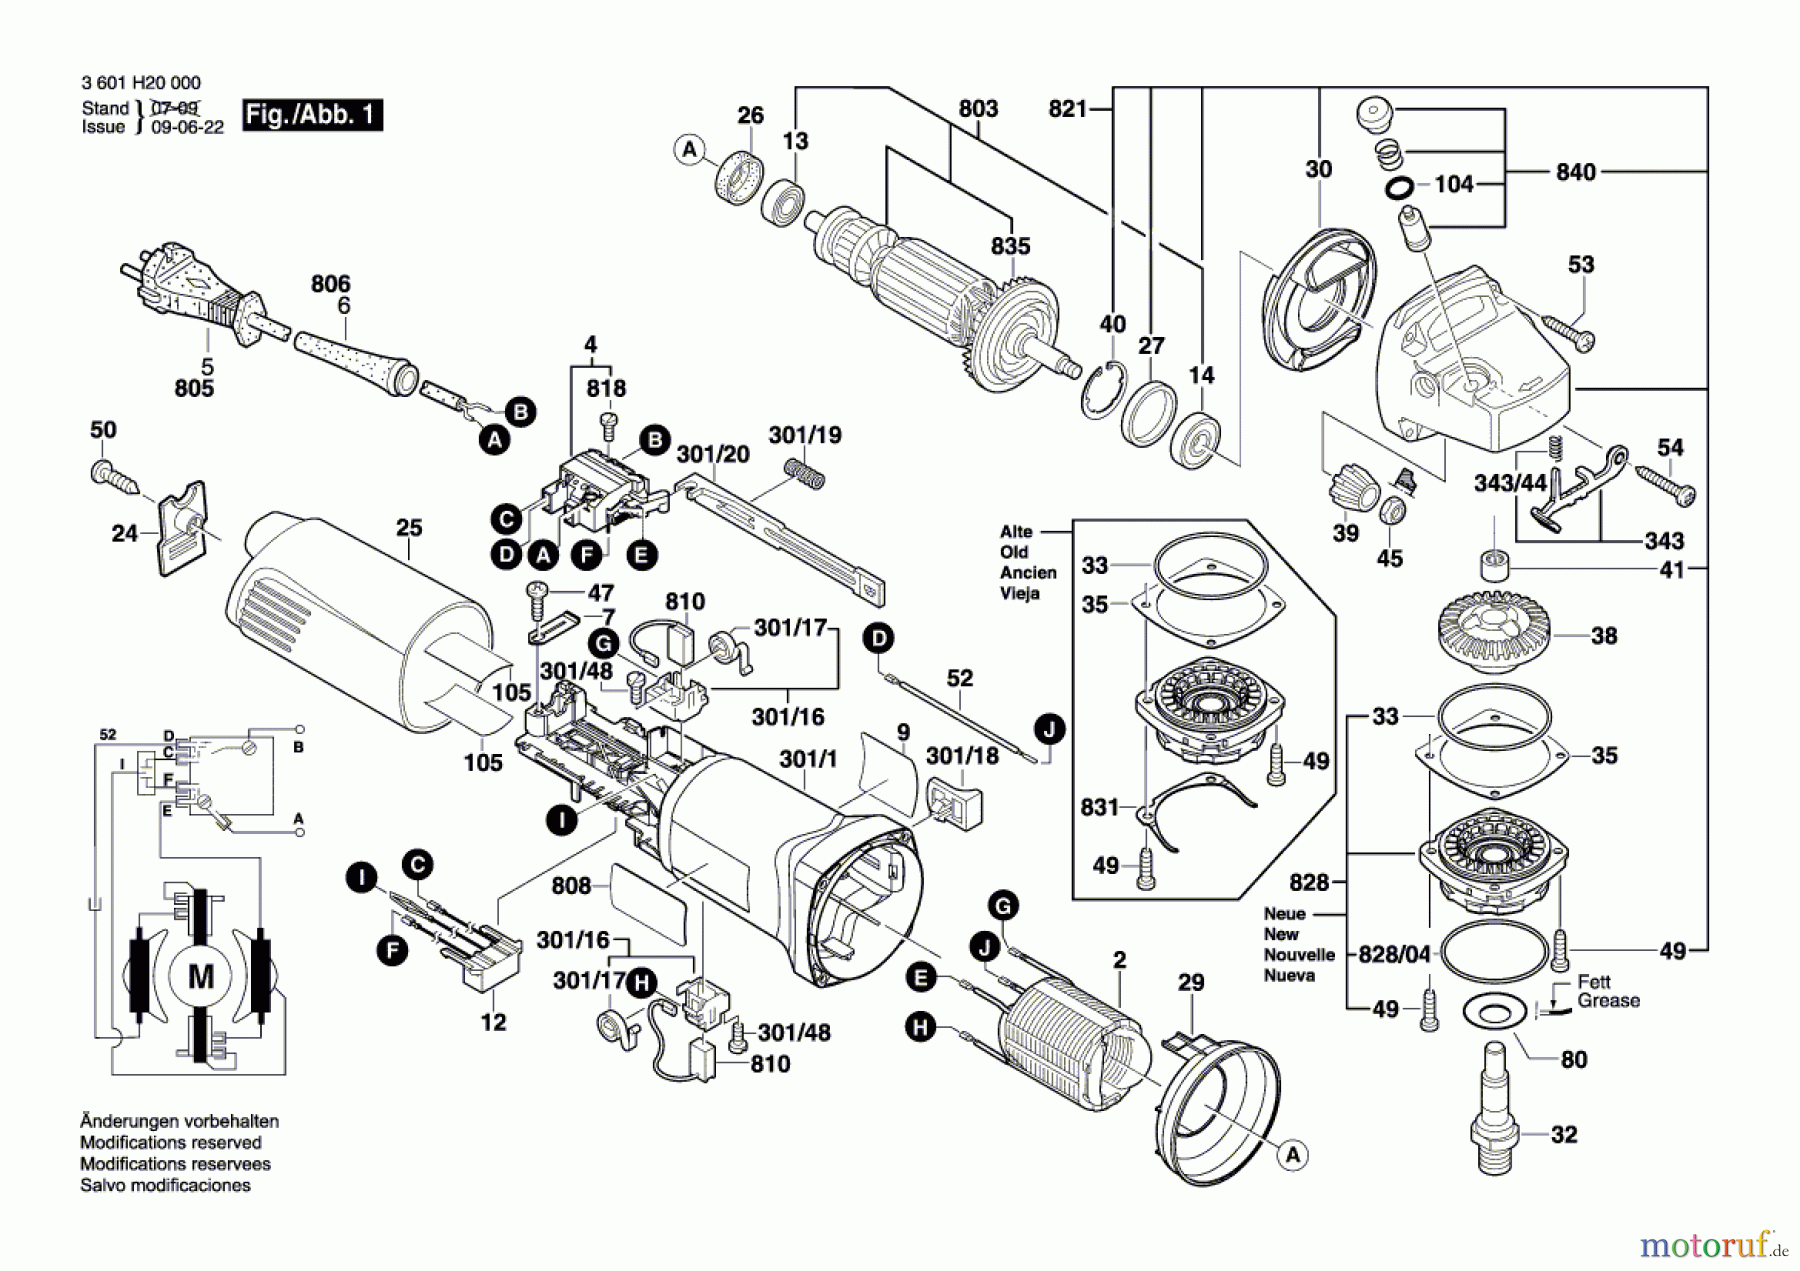  Bosch Werkzeug Winkelschleifer GWS 8-125 Seite 1